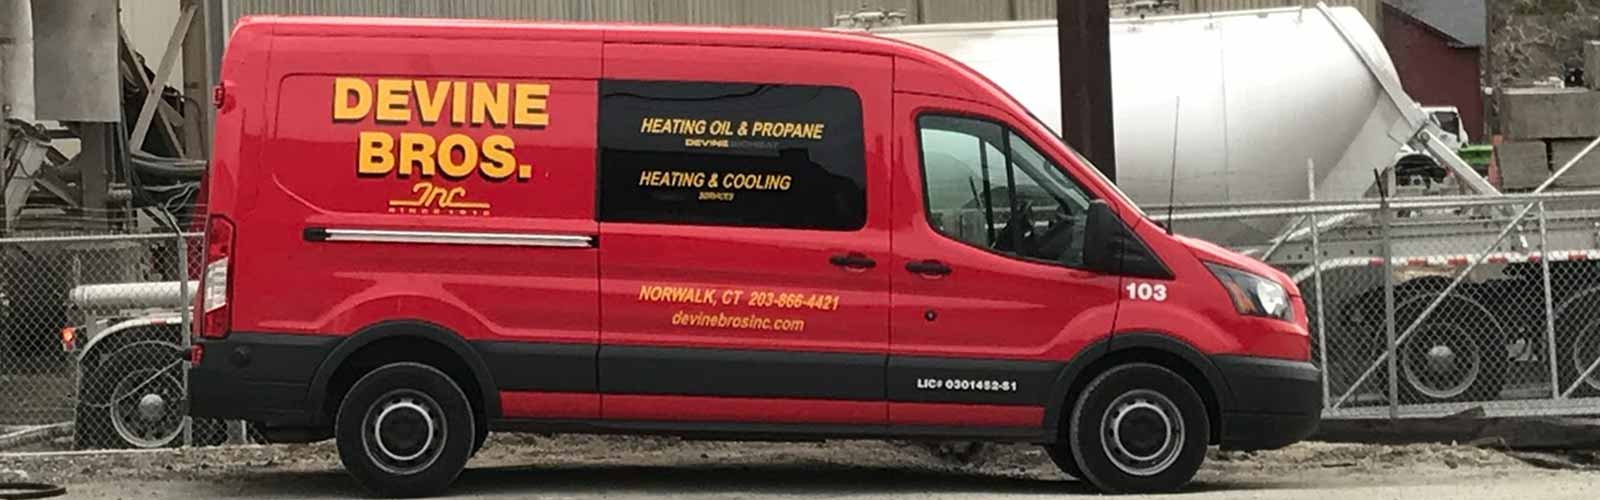 Devine Bros Red Van Near Worksite | Heating Oil Norwalk | Propane New Canaan